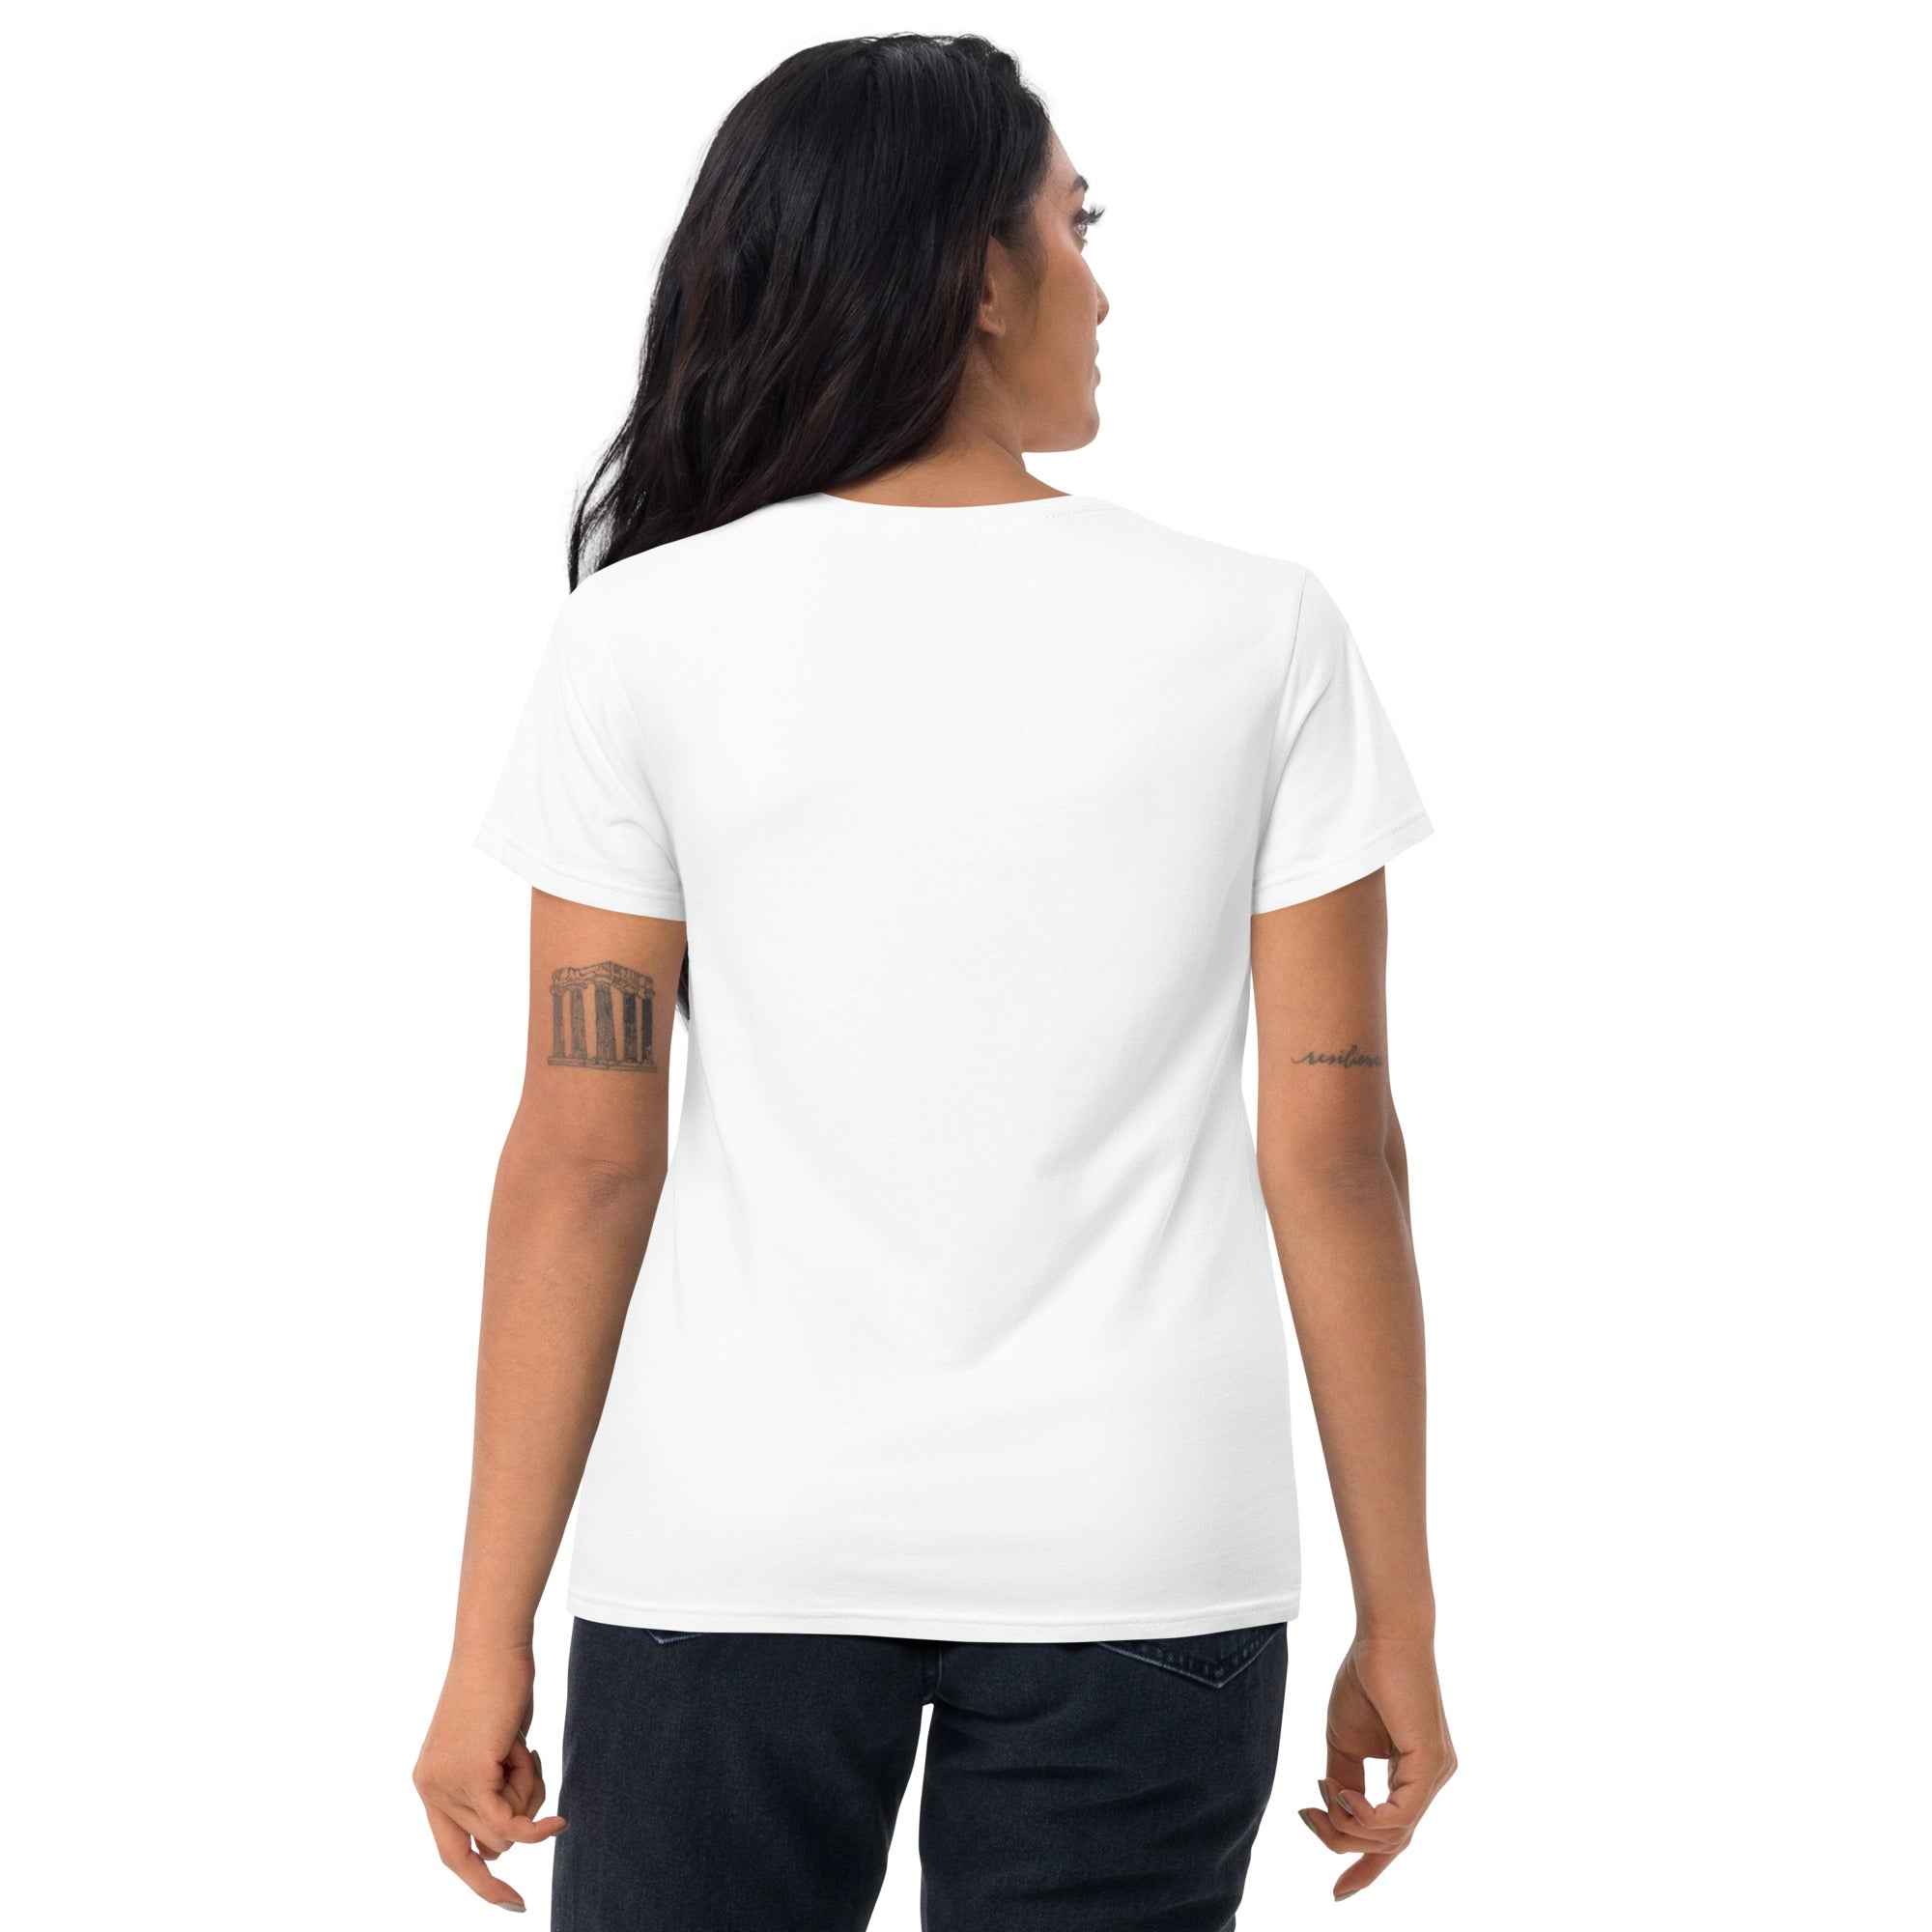 Women's short sleeve t-shirt, summer t shirt,